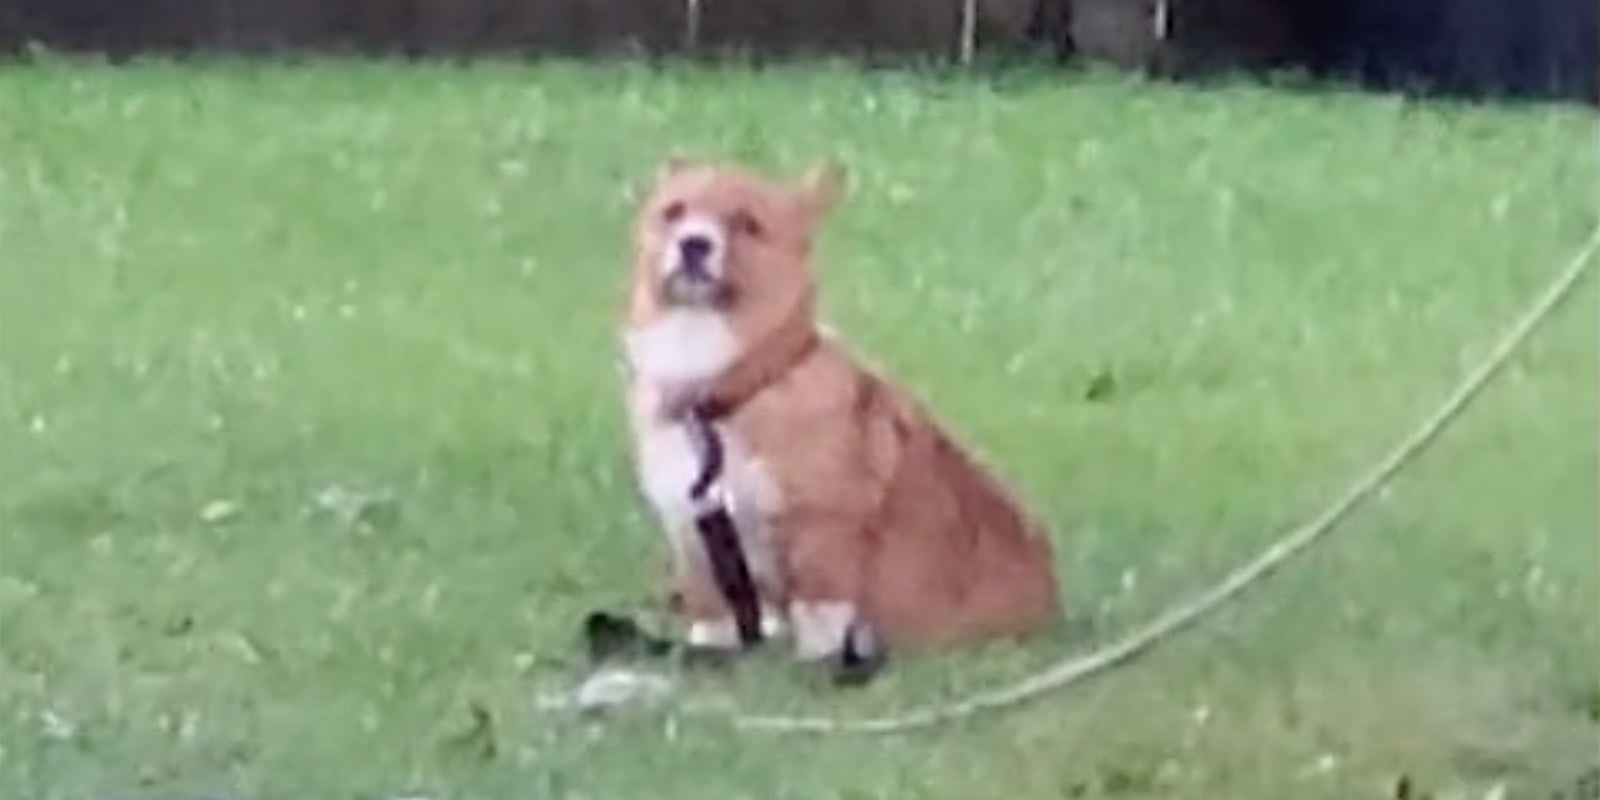 A dog on a leash.